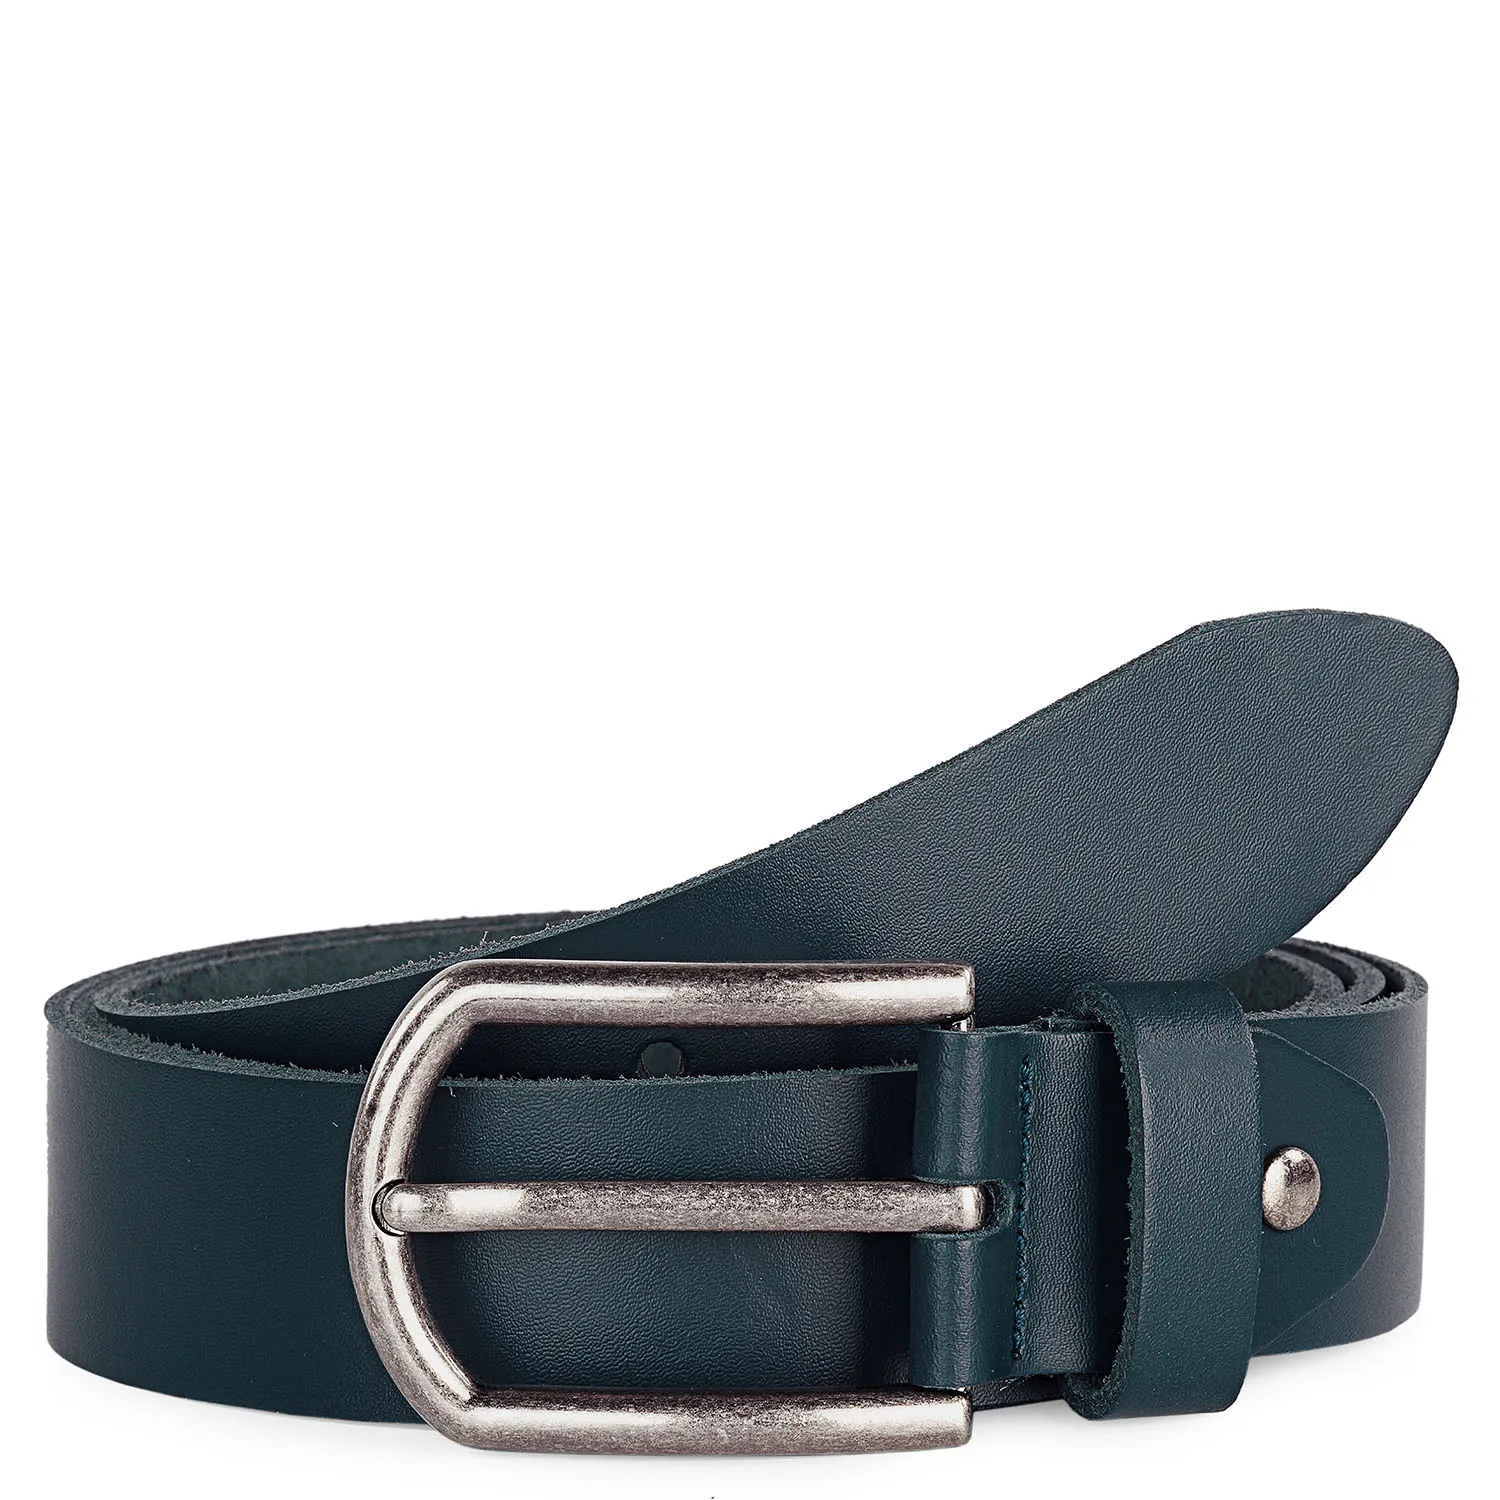 Cinturon Hombre - Cinturones Hombre Piel Genuina Con Cinturon De Metal - Cinturón Hombre Ideal Para El Uso - Elegantes Cinturones Cuero Marca JASLEN 501102 | Miravia